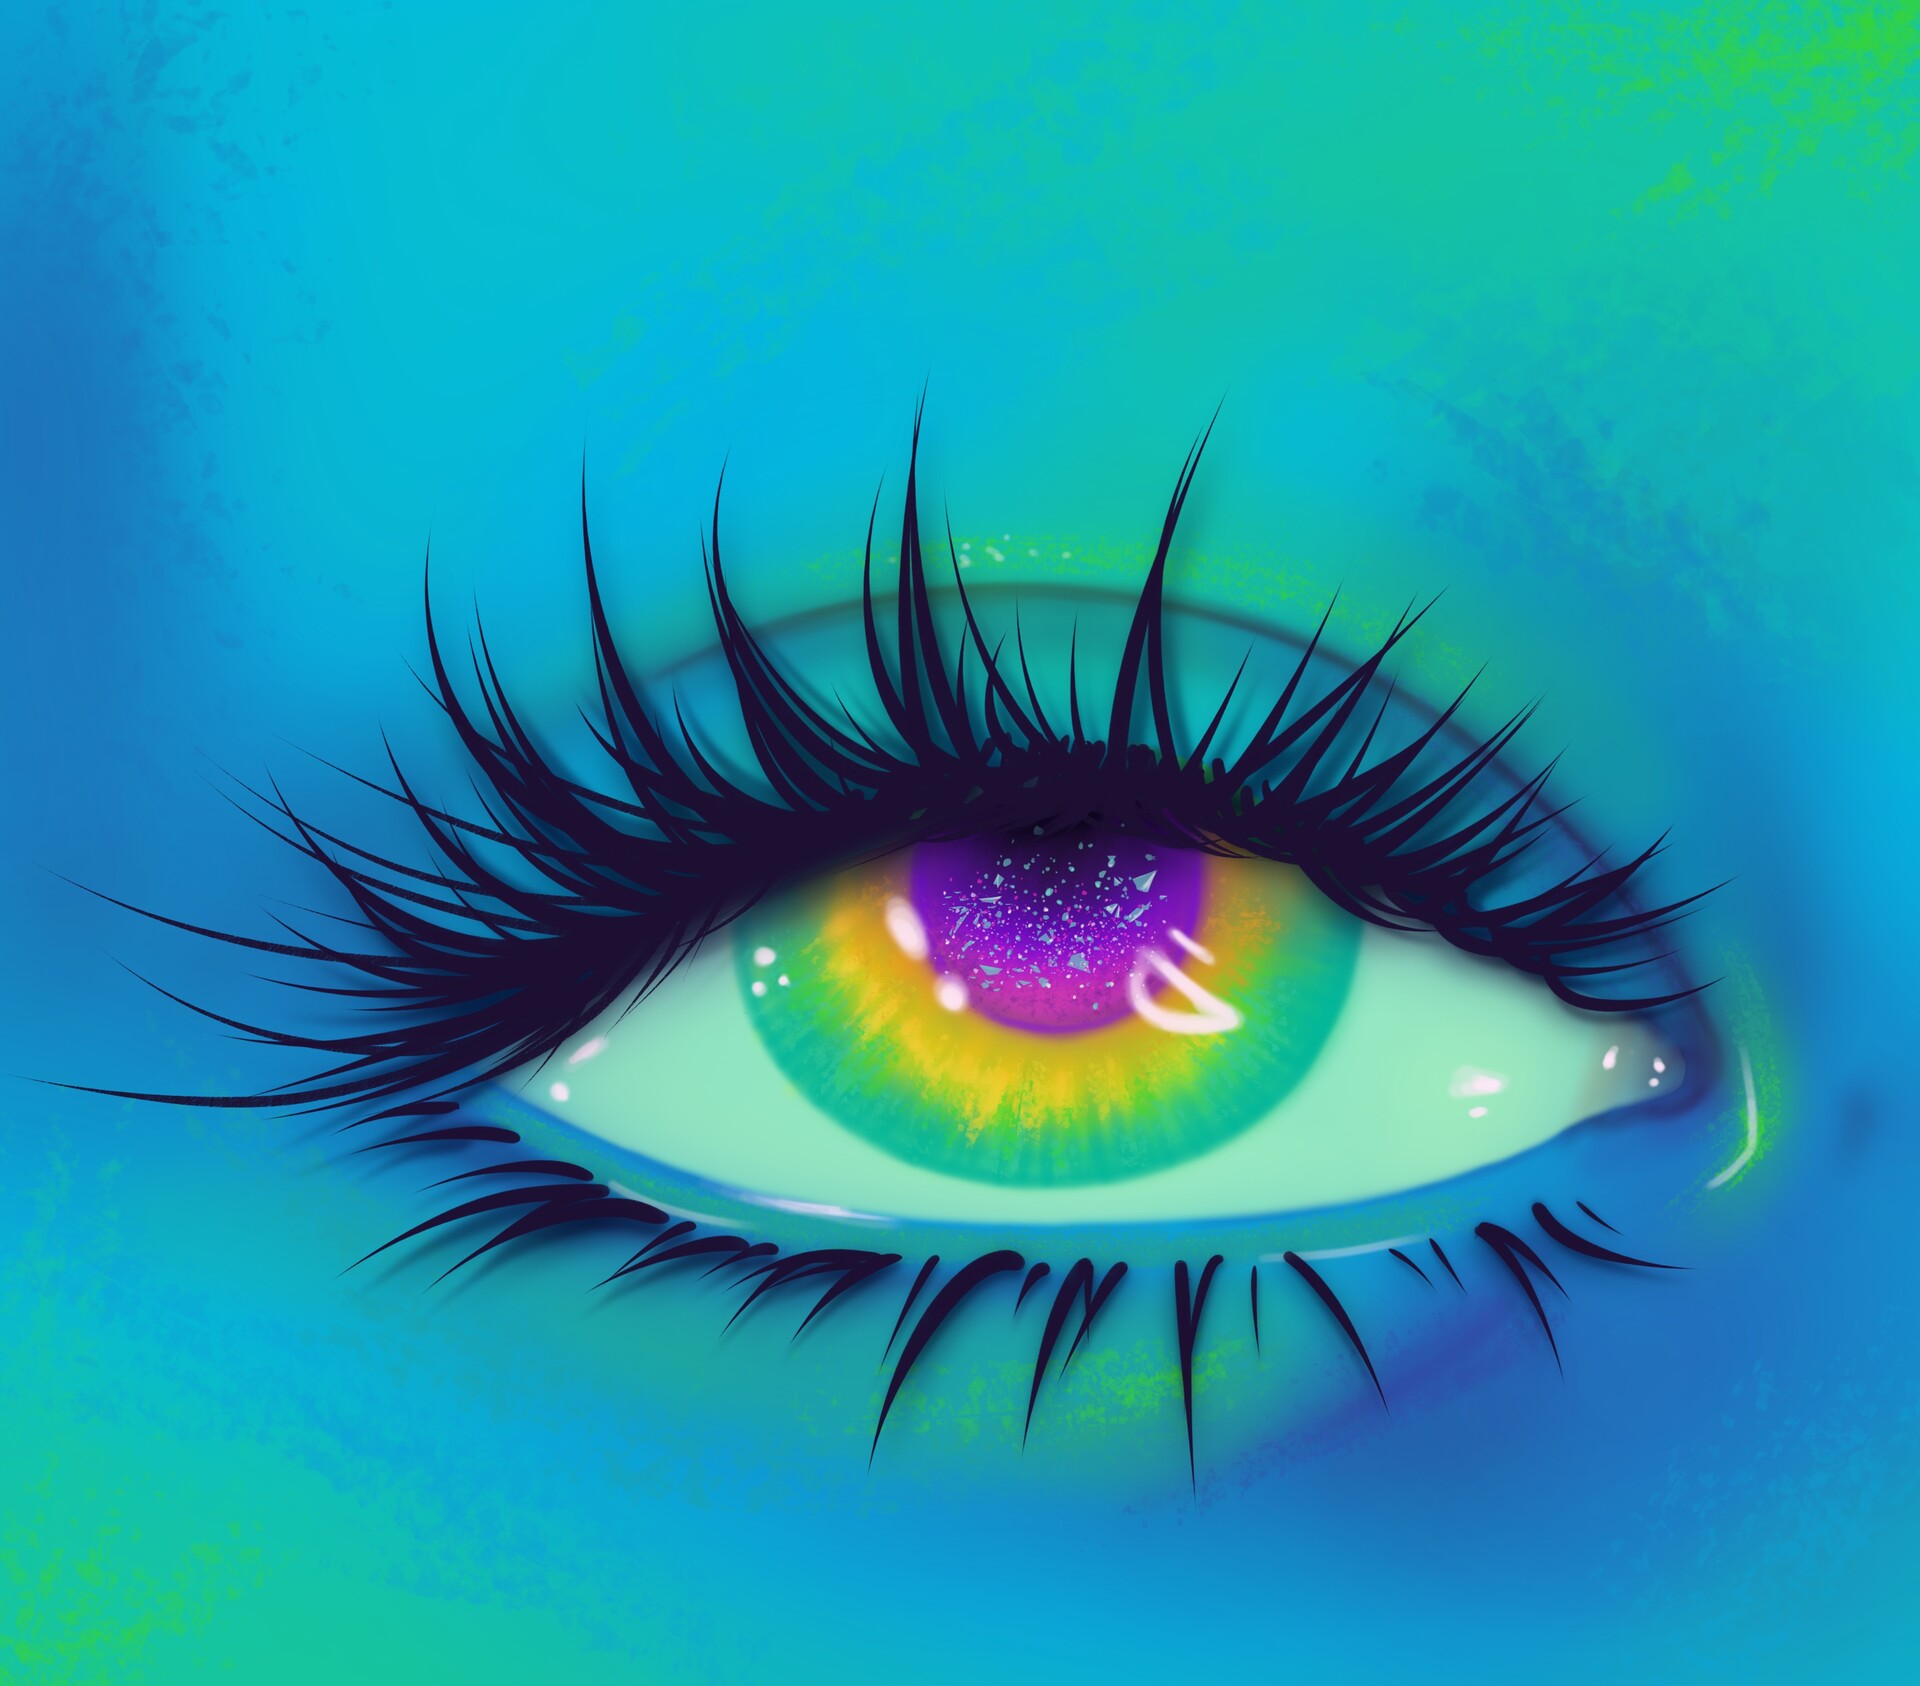 ArtStation - Eye study